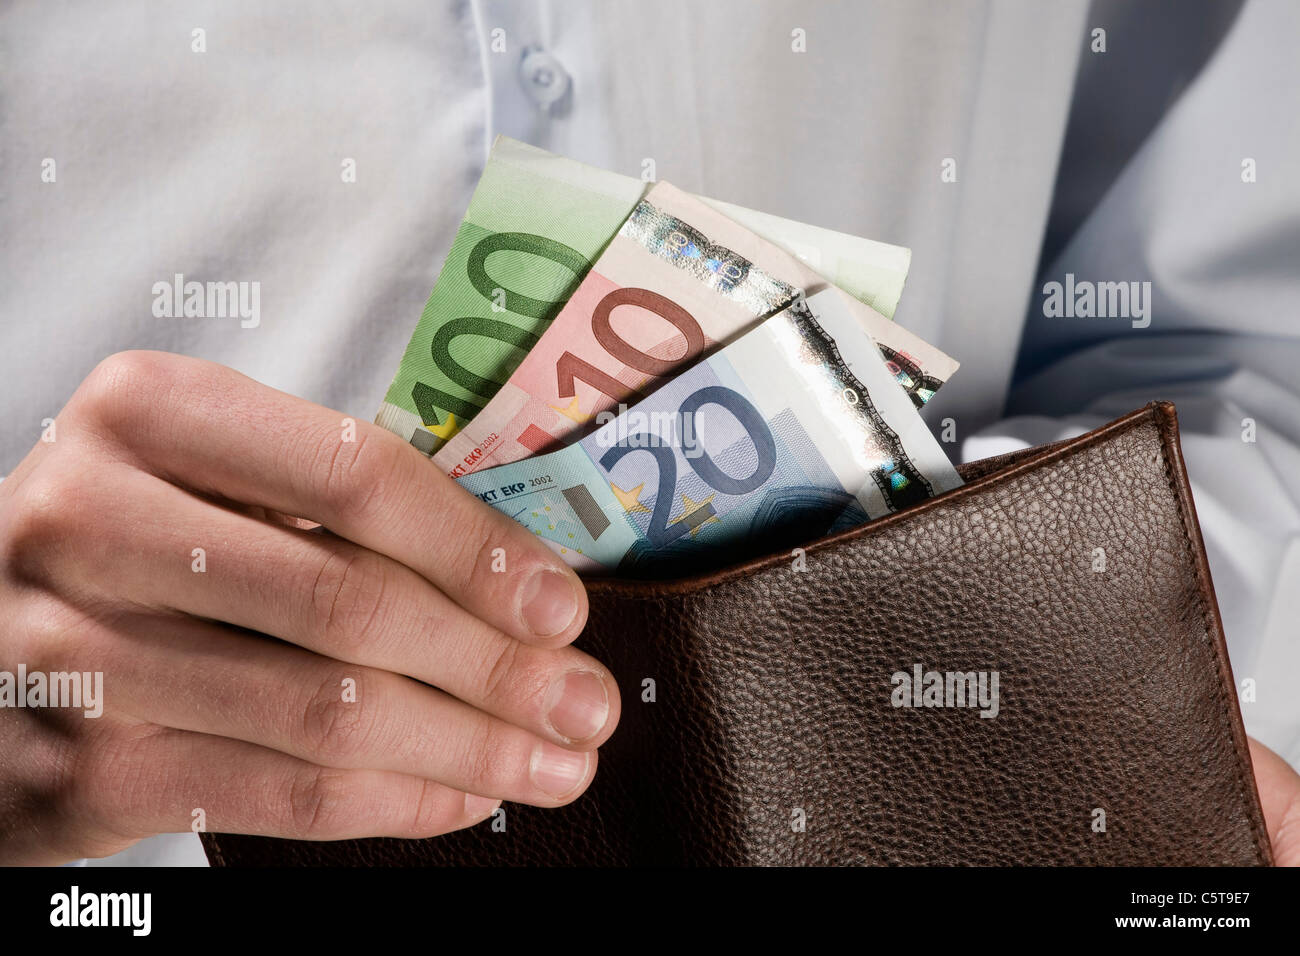 Personne compter les billets en Euro, close-up Banque D'Images